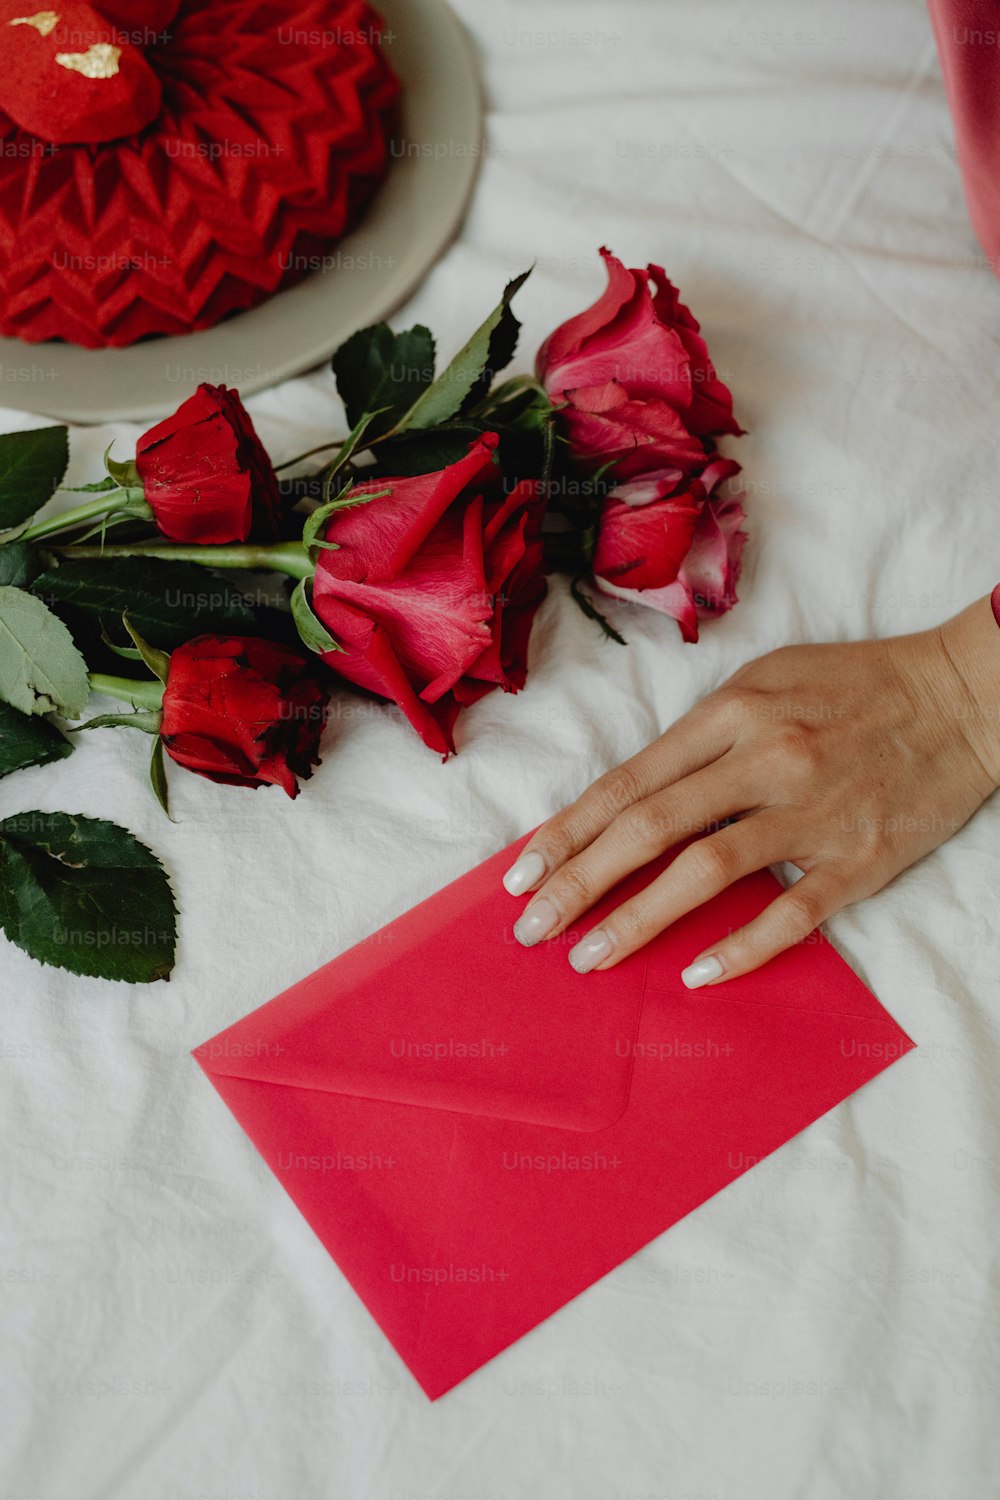 Eine Frauenhand auf einem roten Umschlag neben Rosen